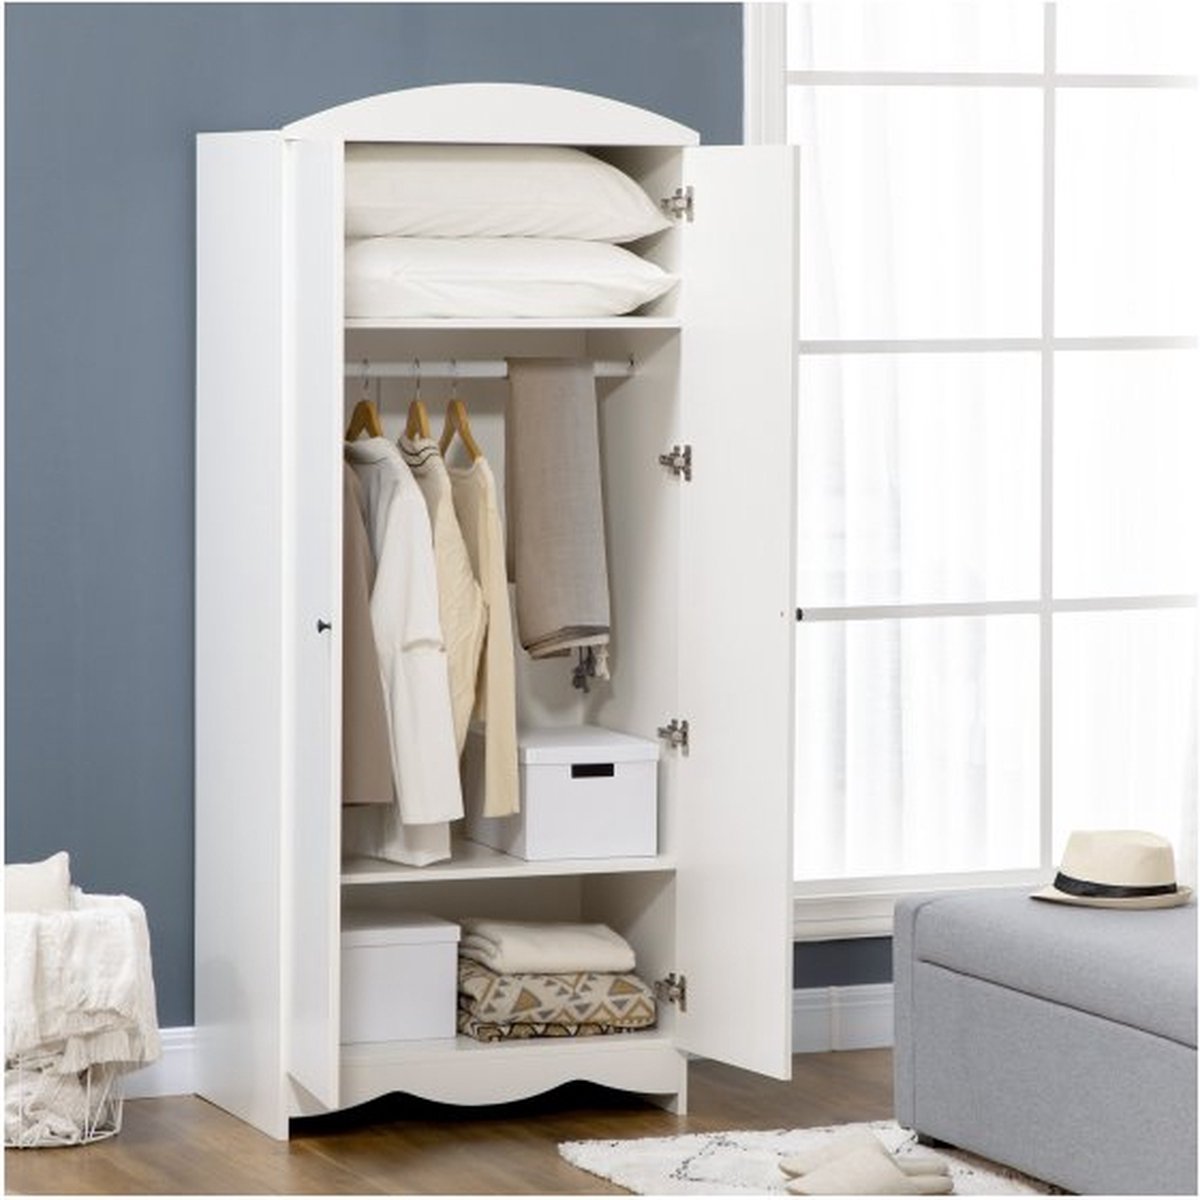 Garderobe, multi -purpose kast met dubbele deur, 3 planken, mantelkamerkast, bestandskast met kantelbeveiliging, wit, 75 x 50 x 180 cm